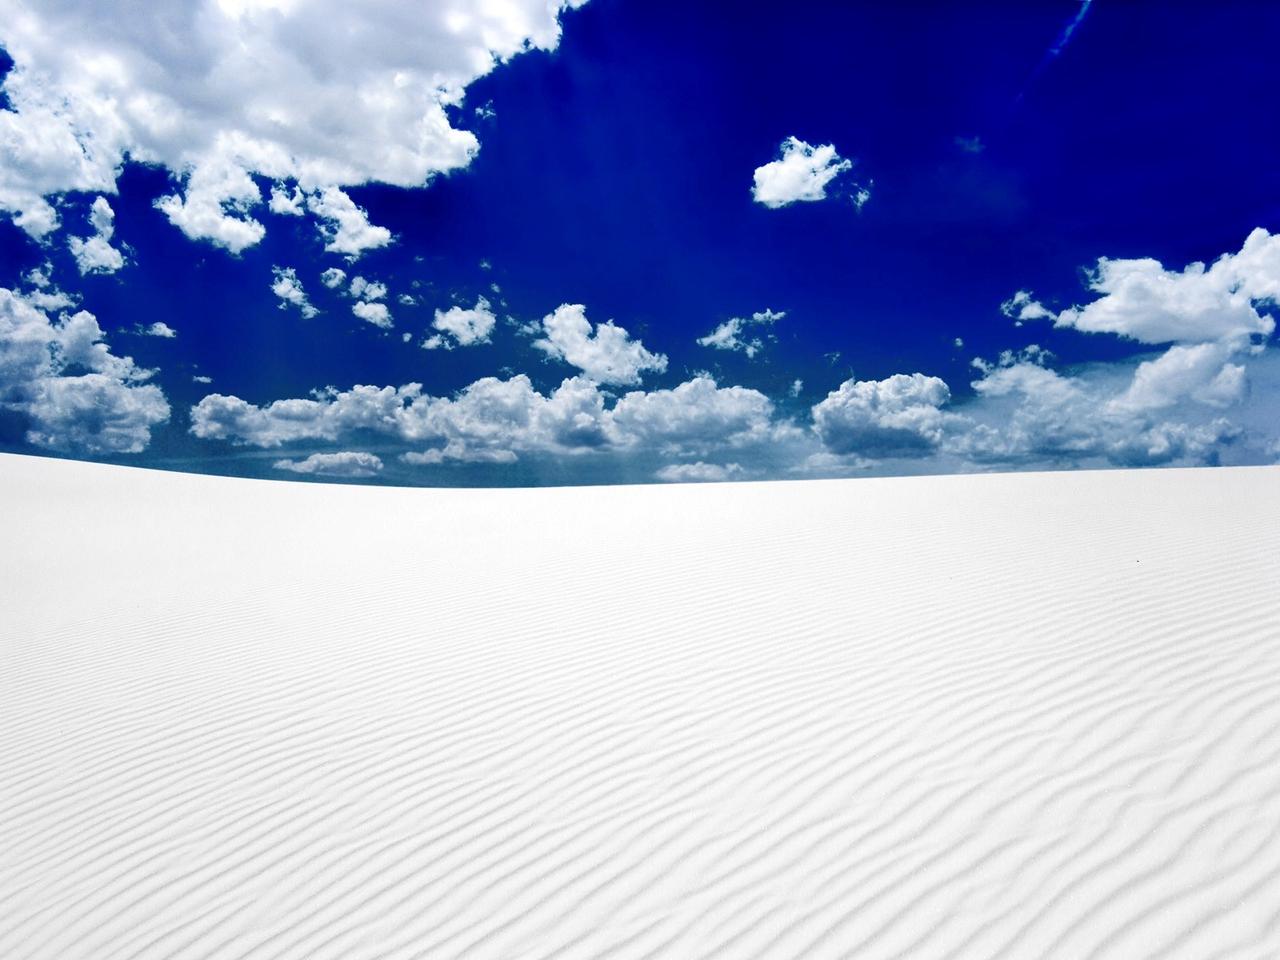 White sand in desert and blue sky